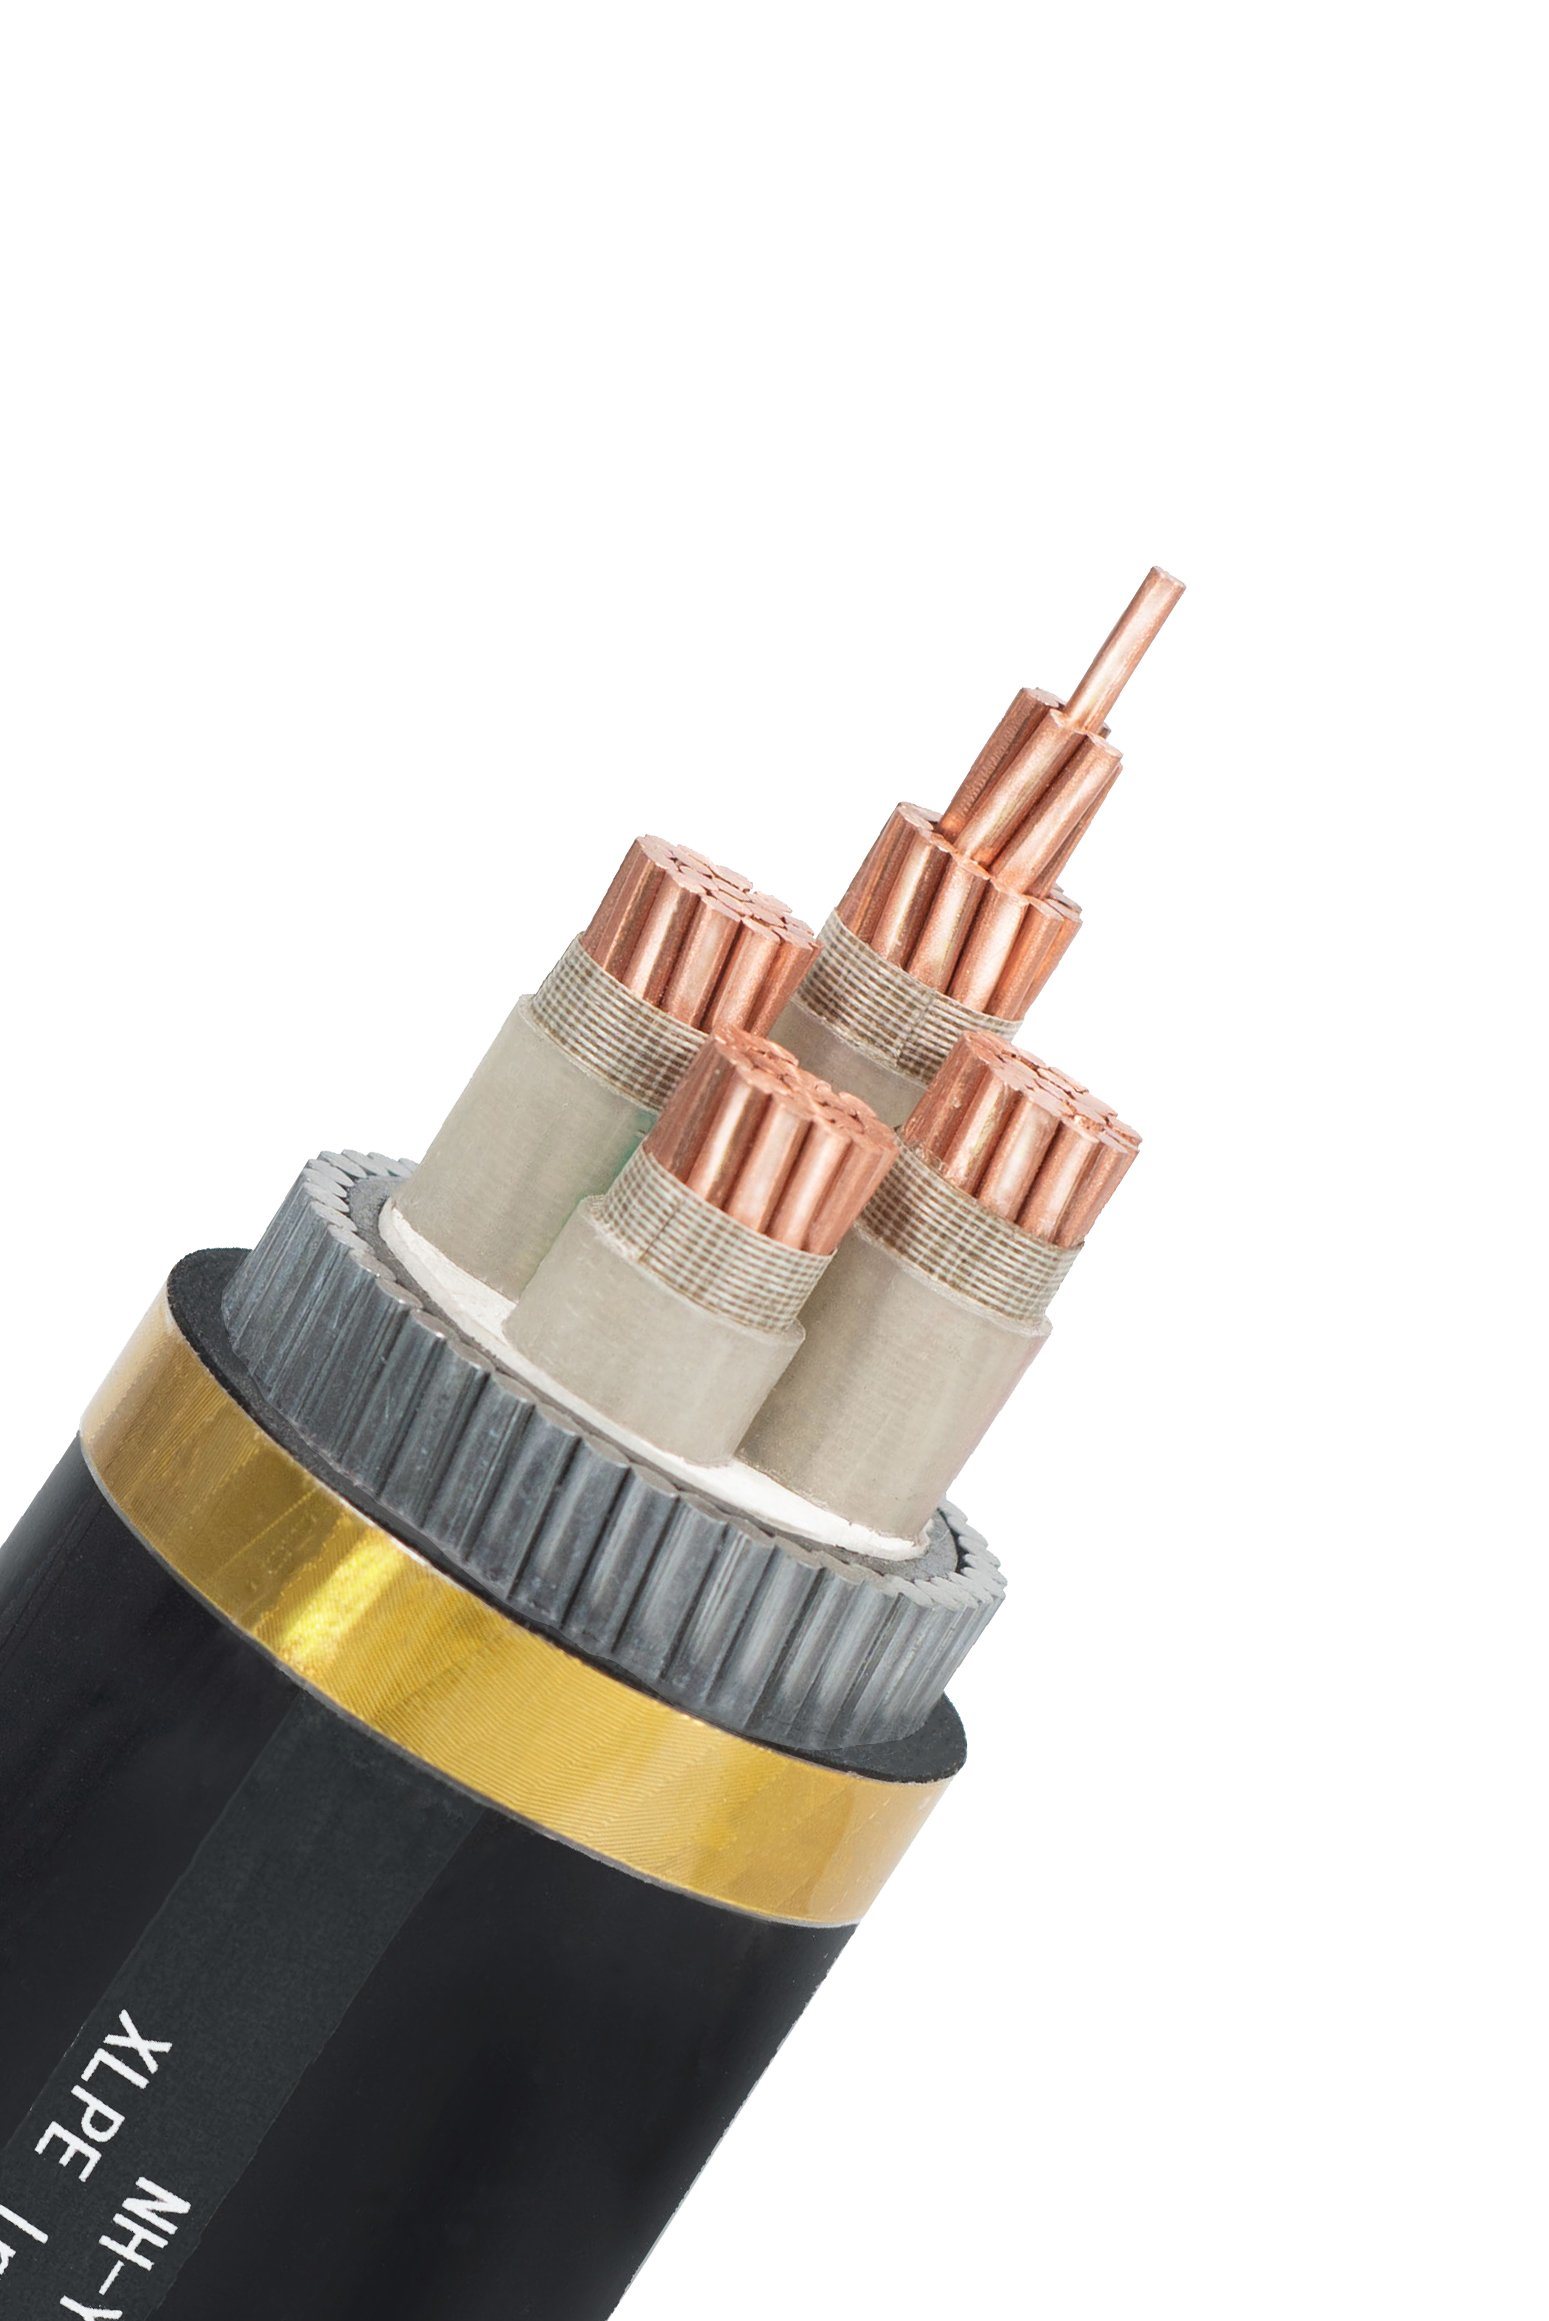 
                Компактный многожильный кабель из мягкой меди среднего напряжения класса 2 N2xsy 18/30 Изоляция кВ UIC 895 XLPE-TR
            